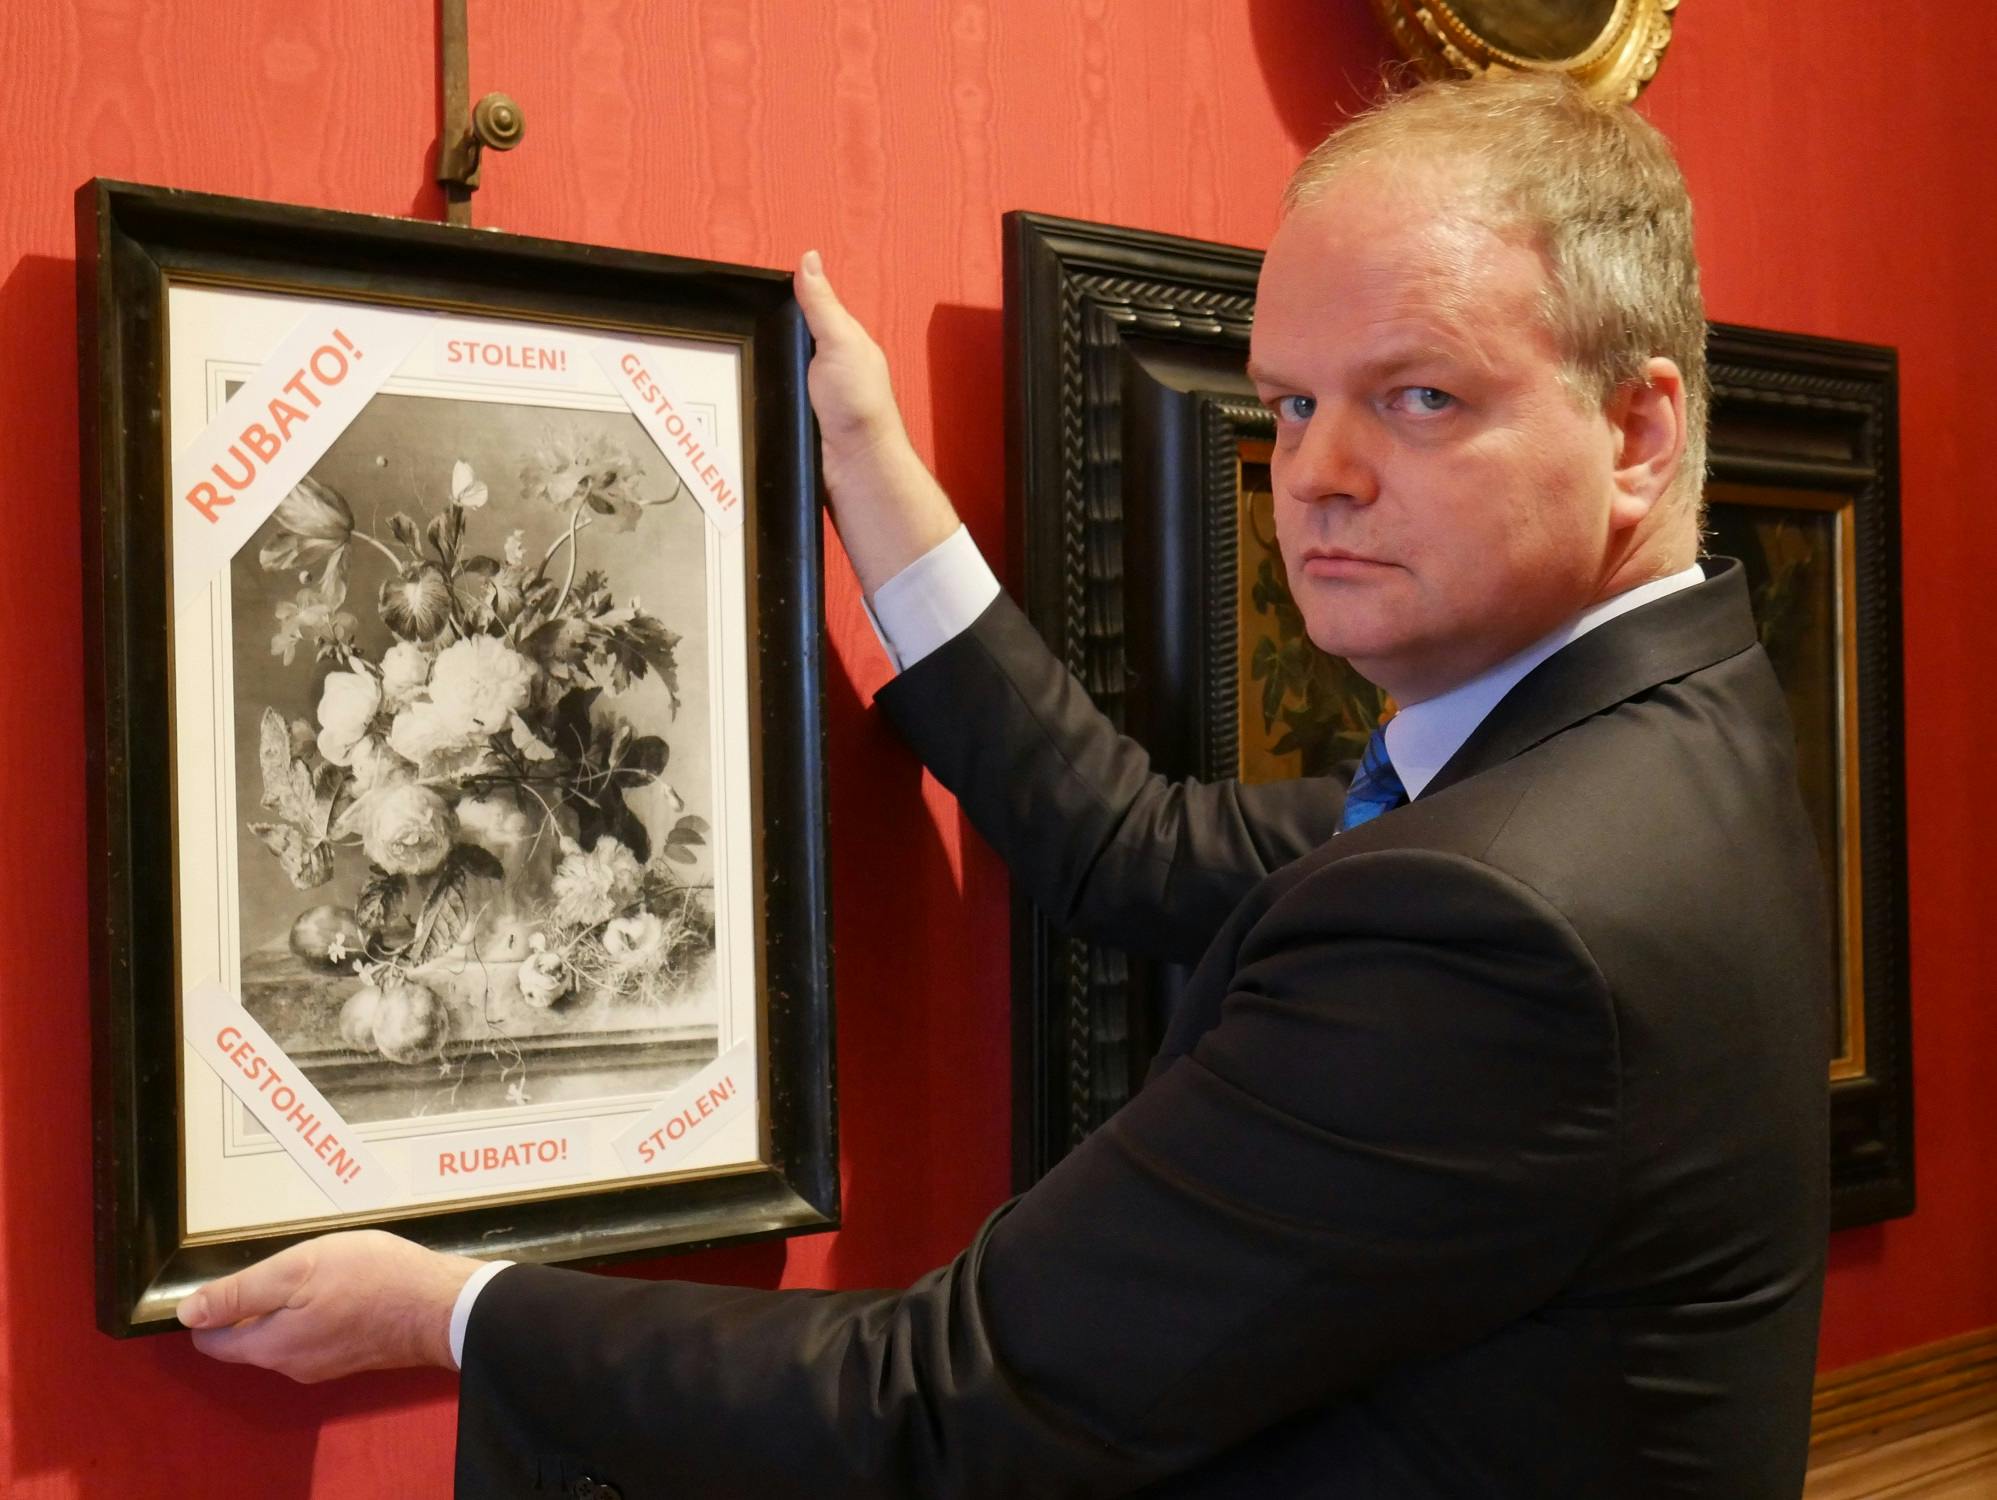 La Germania restituisca a Firenze il dipinto rubato dai nazisti